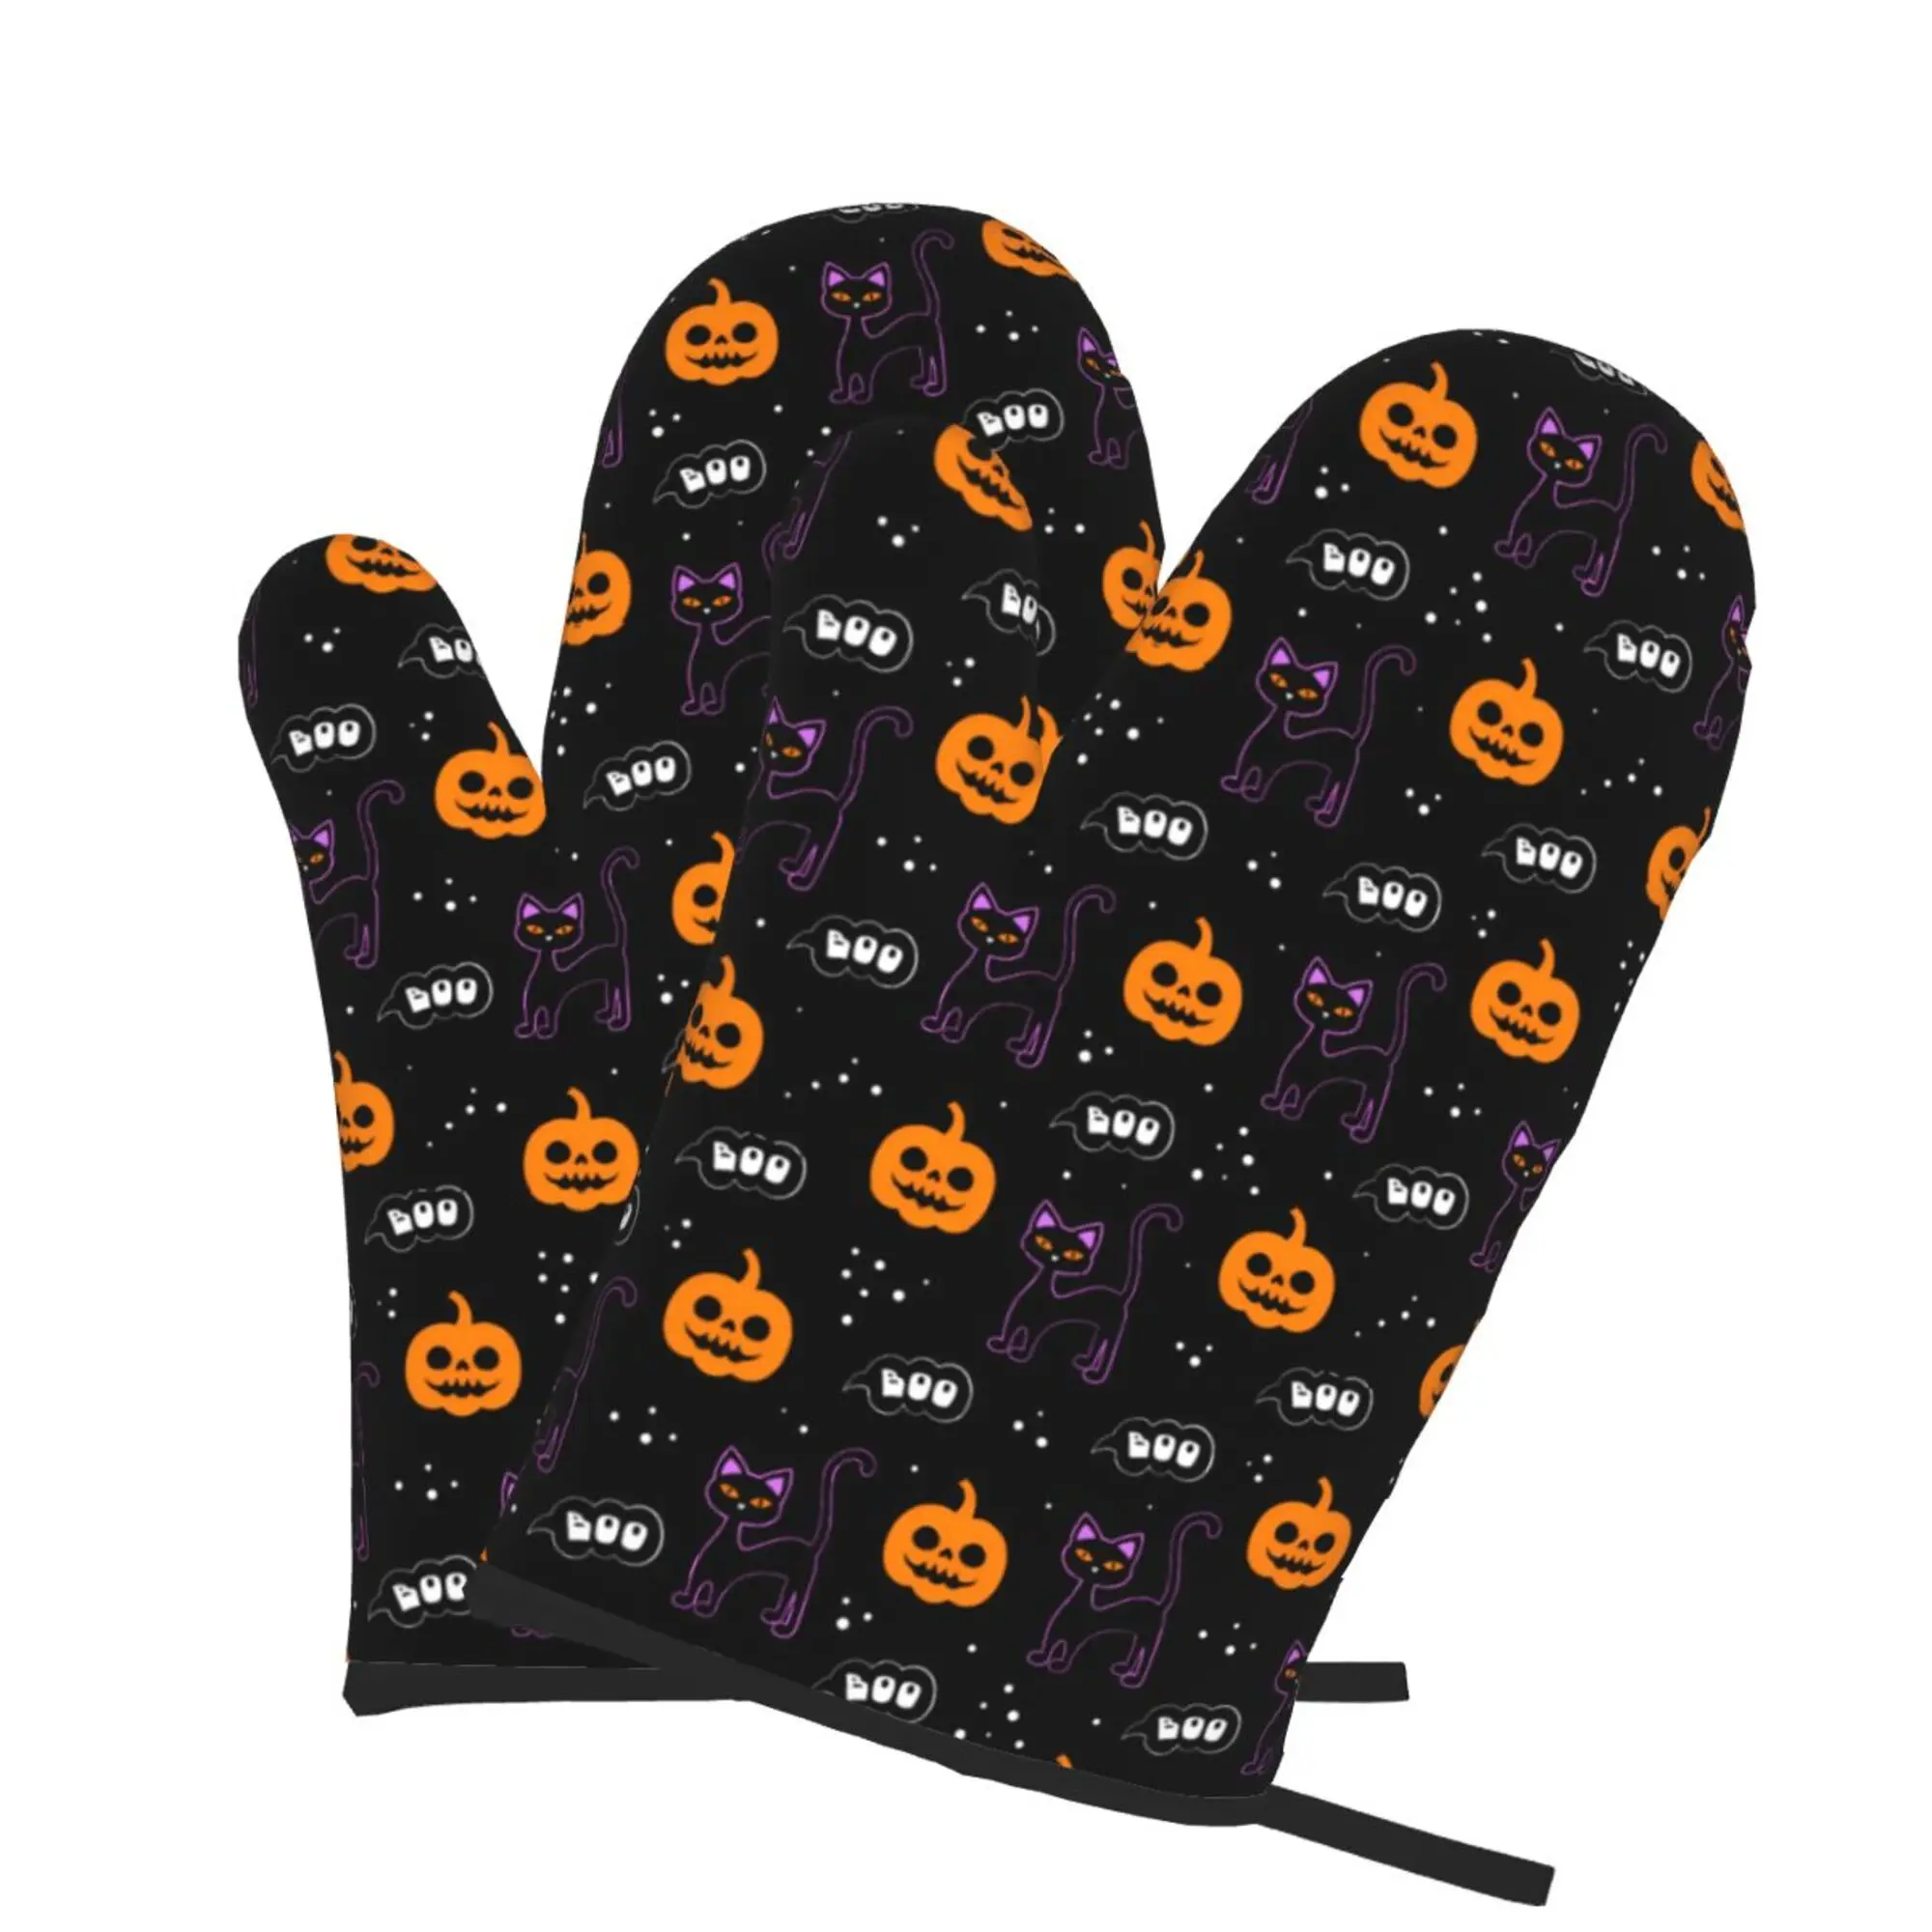 Прихватки с тыквой Black Cat Boo на Хэллоуин, 2шт Перчатки для микроволновой печи, Перчатки для приготовления барбекю, Термостойкие кухонные перчатки одного размера Изображение 1